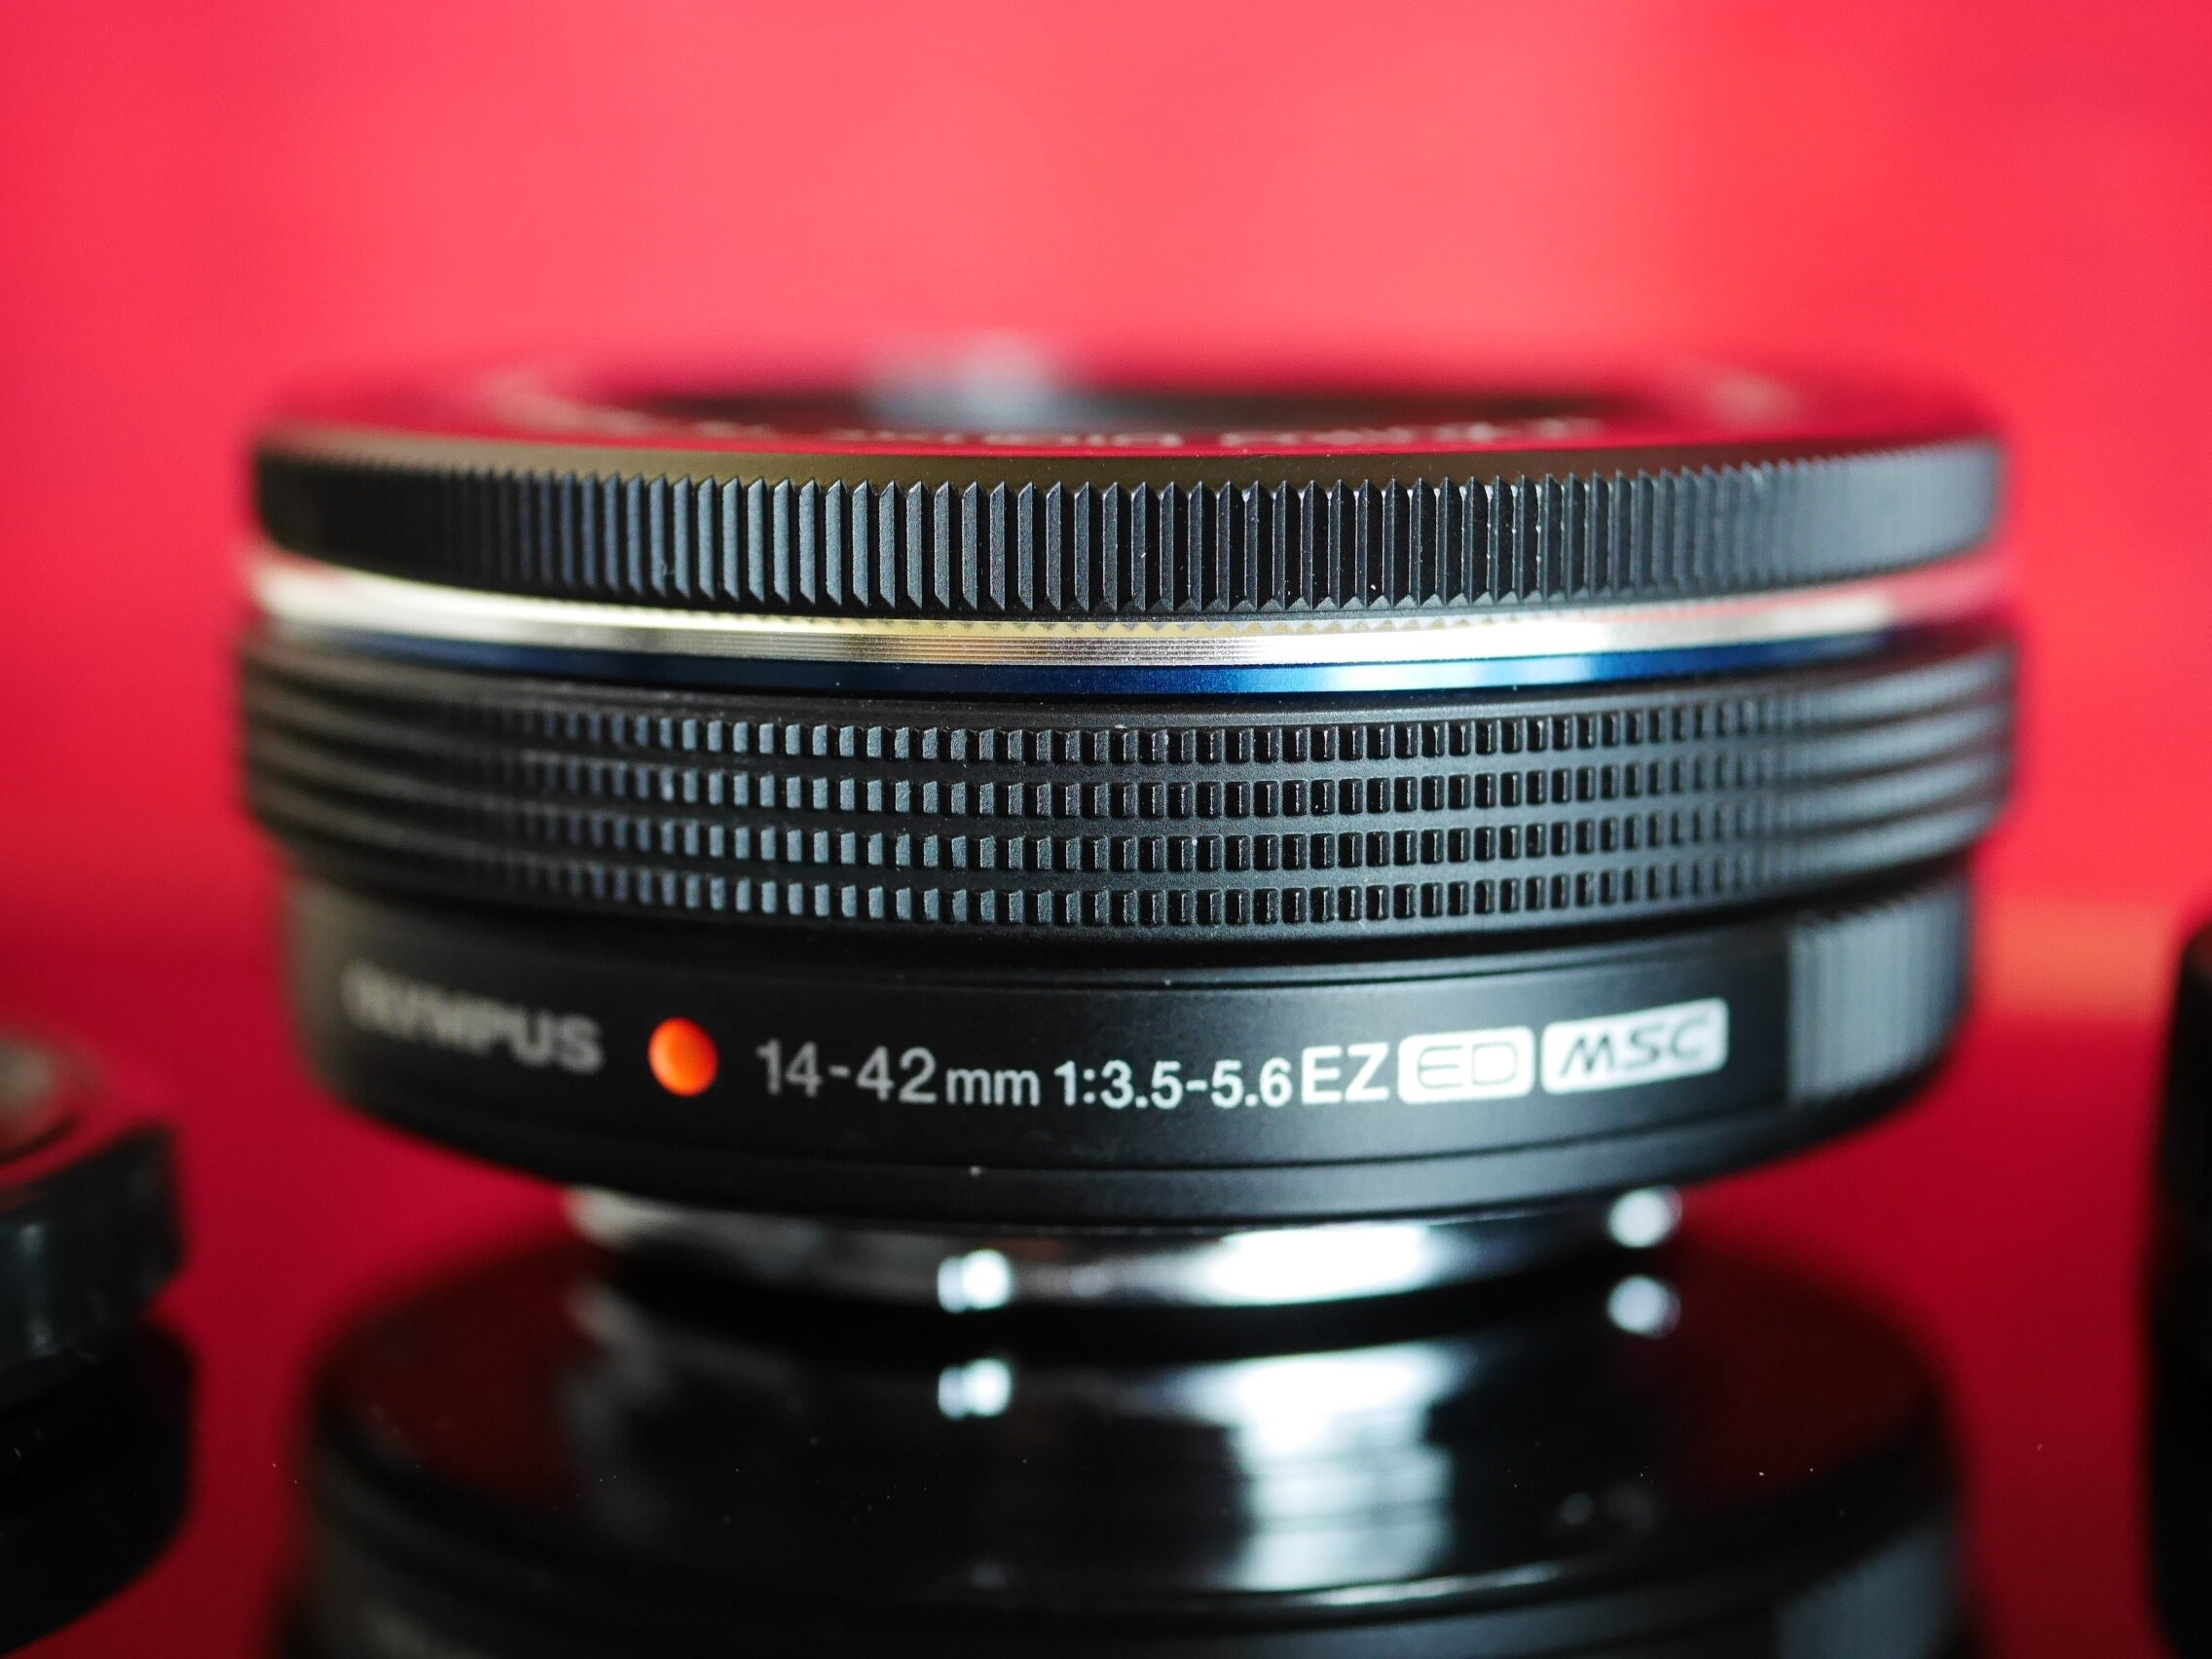 Olympus M.Zuiko 14-42mm F3.5-5.6 EZ ED Black Lens for Micro M4/3